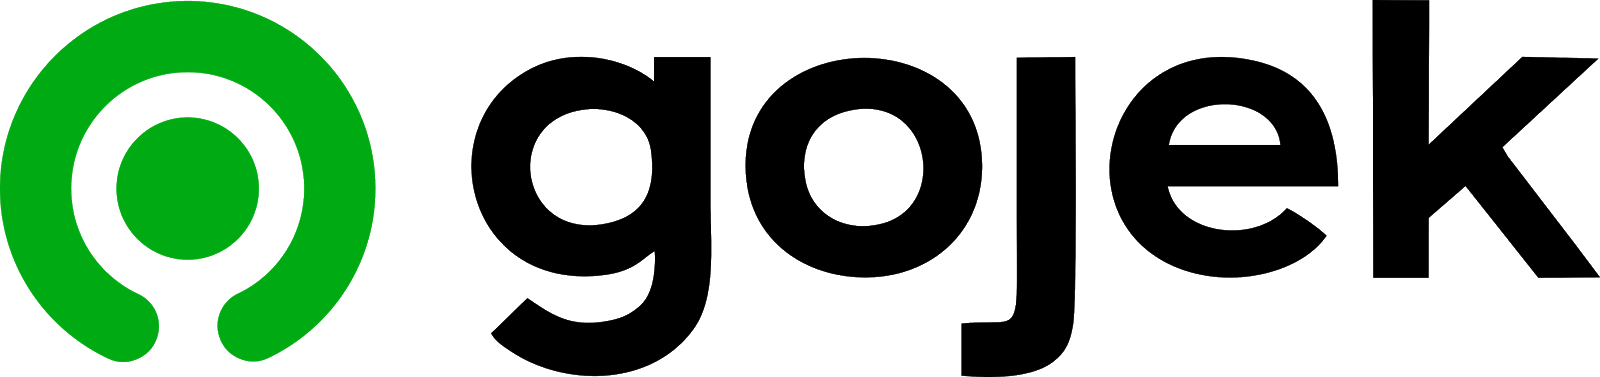  Logo  Gojek  Terbaru  Vector CDR dan PNG Format cdr